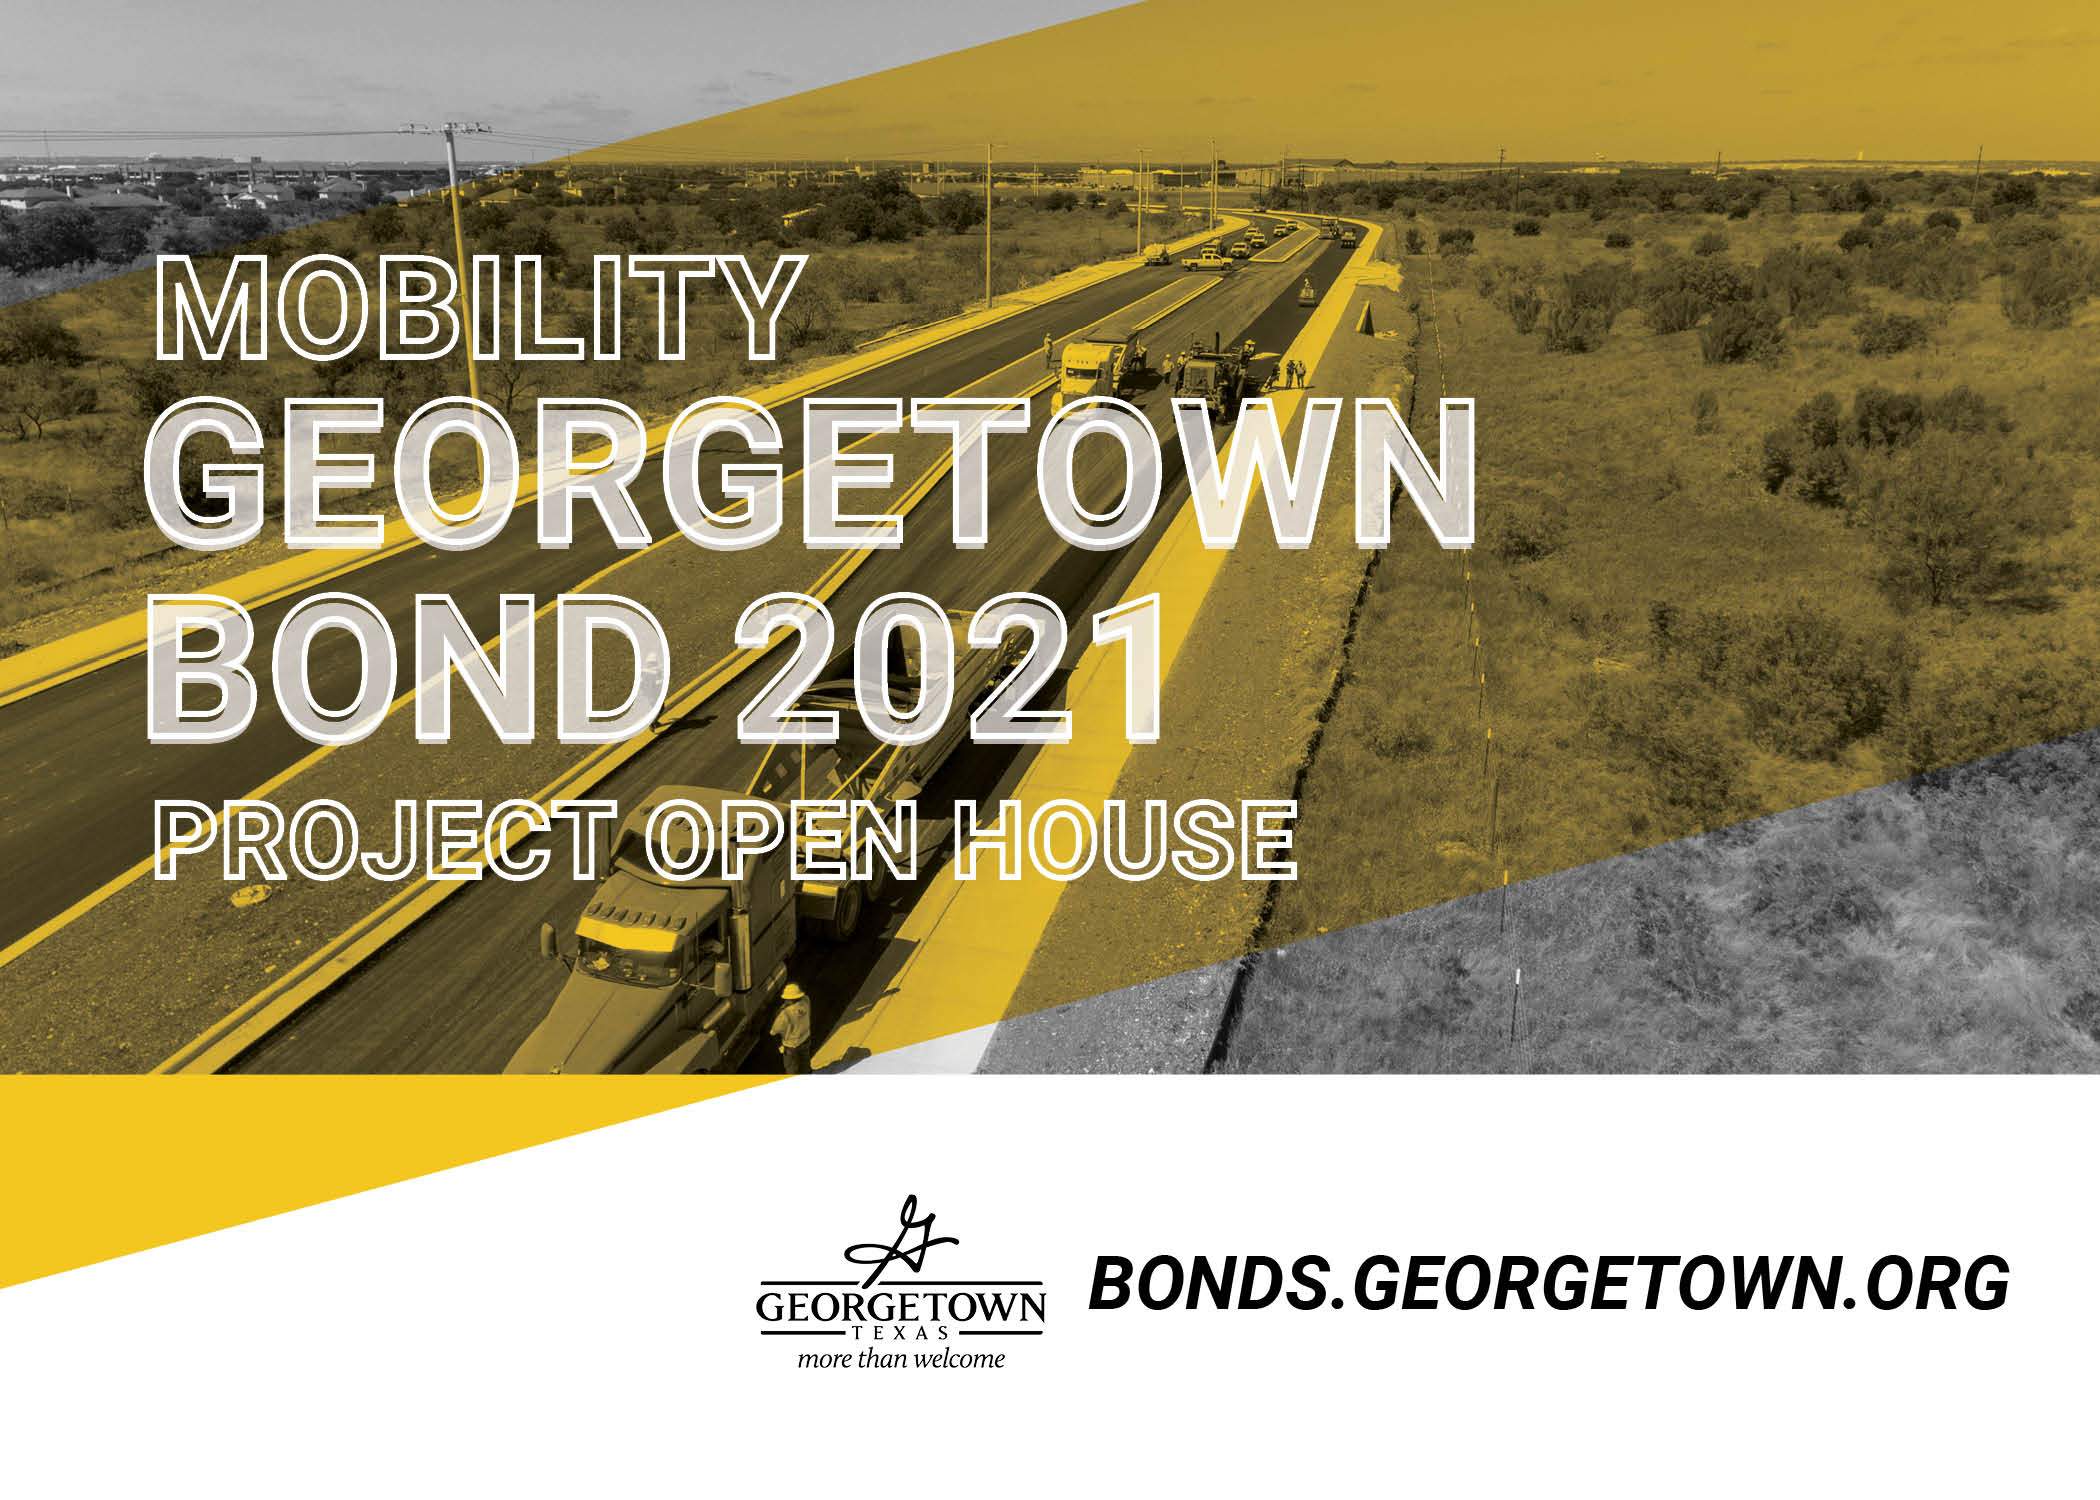 Gráfico de jornada de puertas abiertas del proyecto Georgetown Mobility Bond 2021